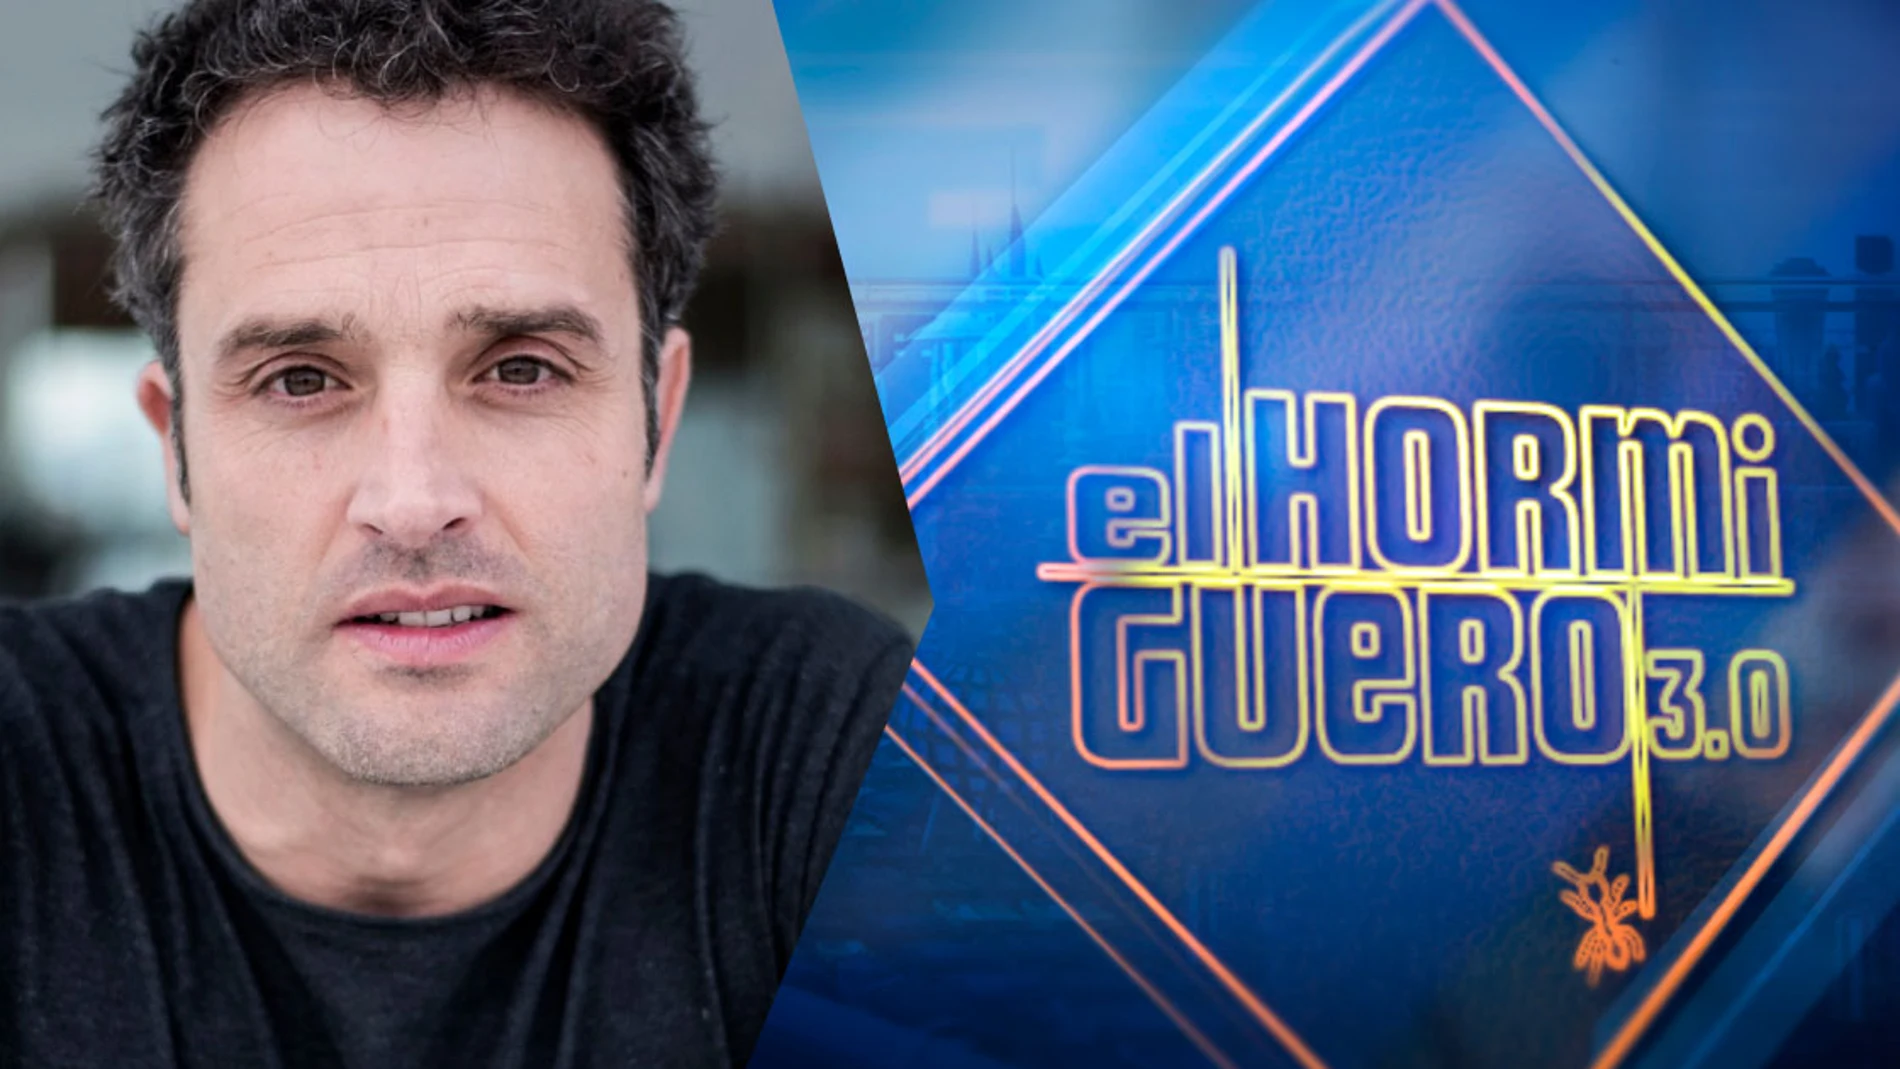 El lunes arranca la semana en 'El Hormiguero 3.0' con Dani Guzmán